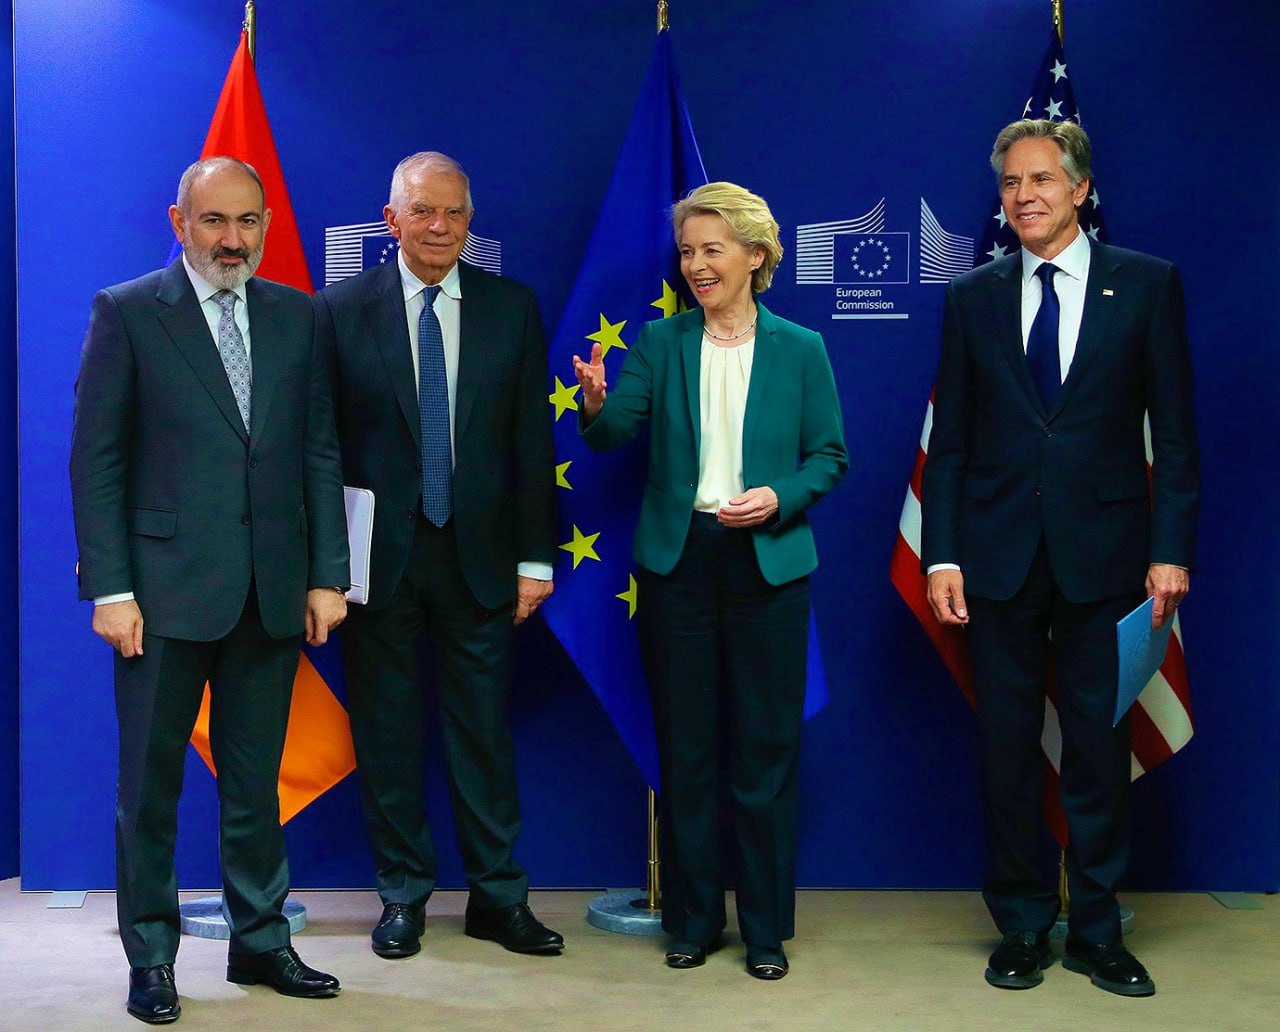 Հիանալի խորհրդակցություններ եմ անցկացրել ԱՄՆ-ի և ԵՄ-ի գործընկերների հետ. Նիկոլ Փաշինյան